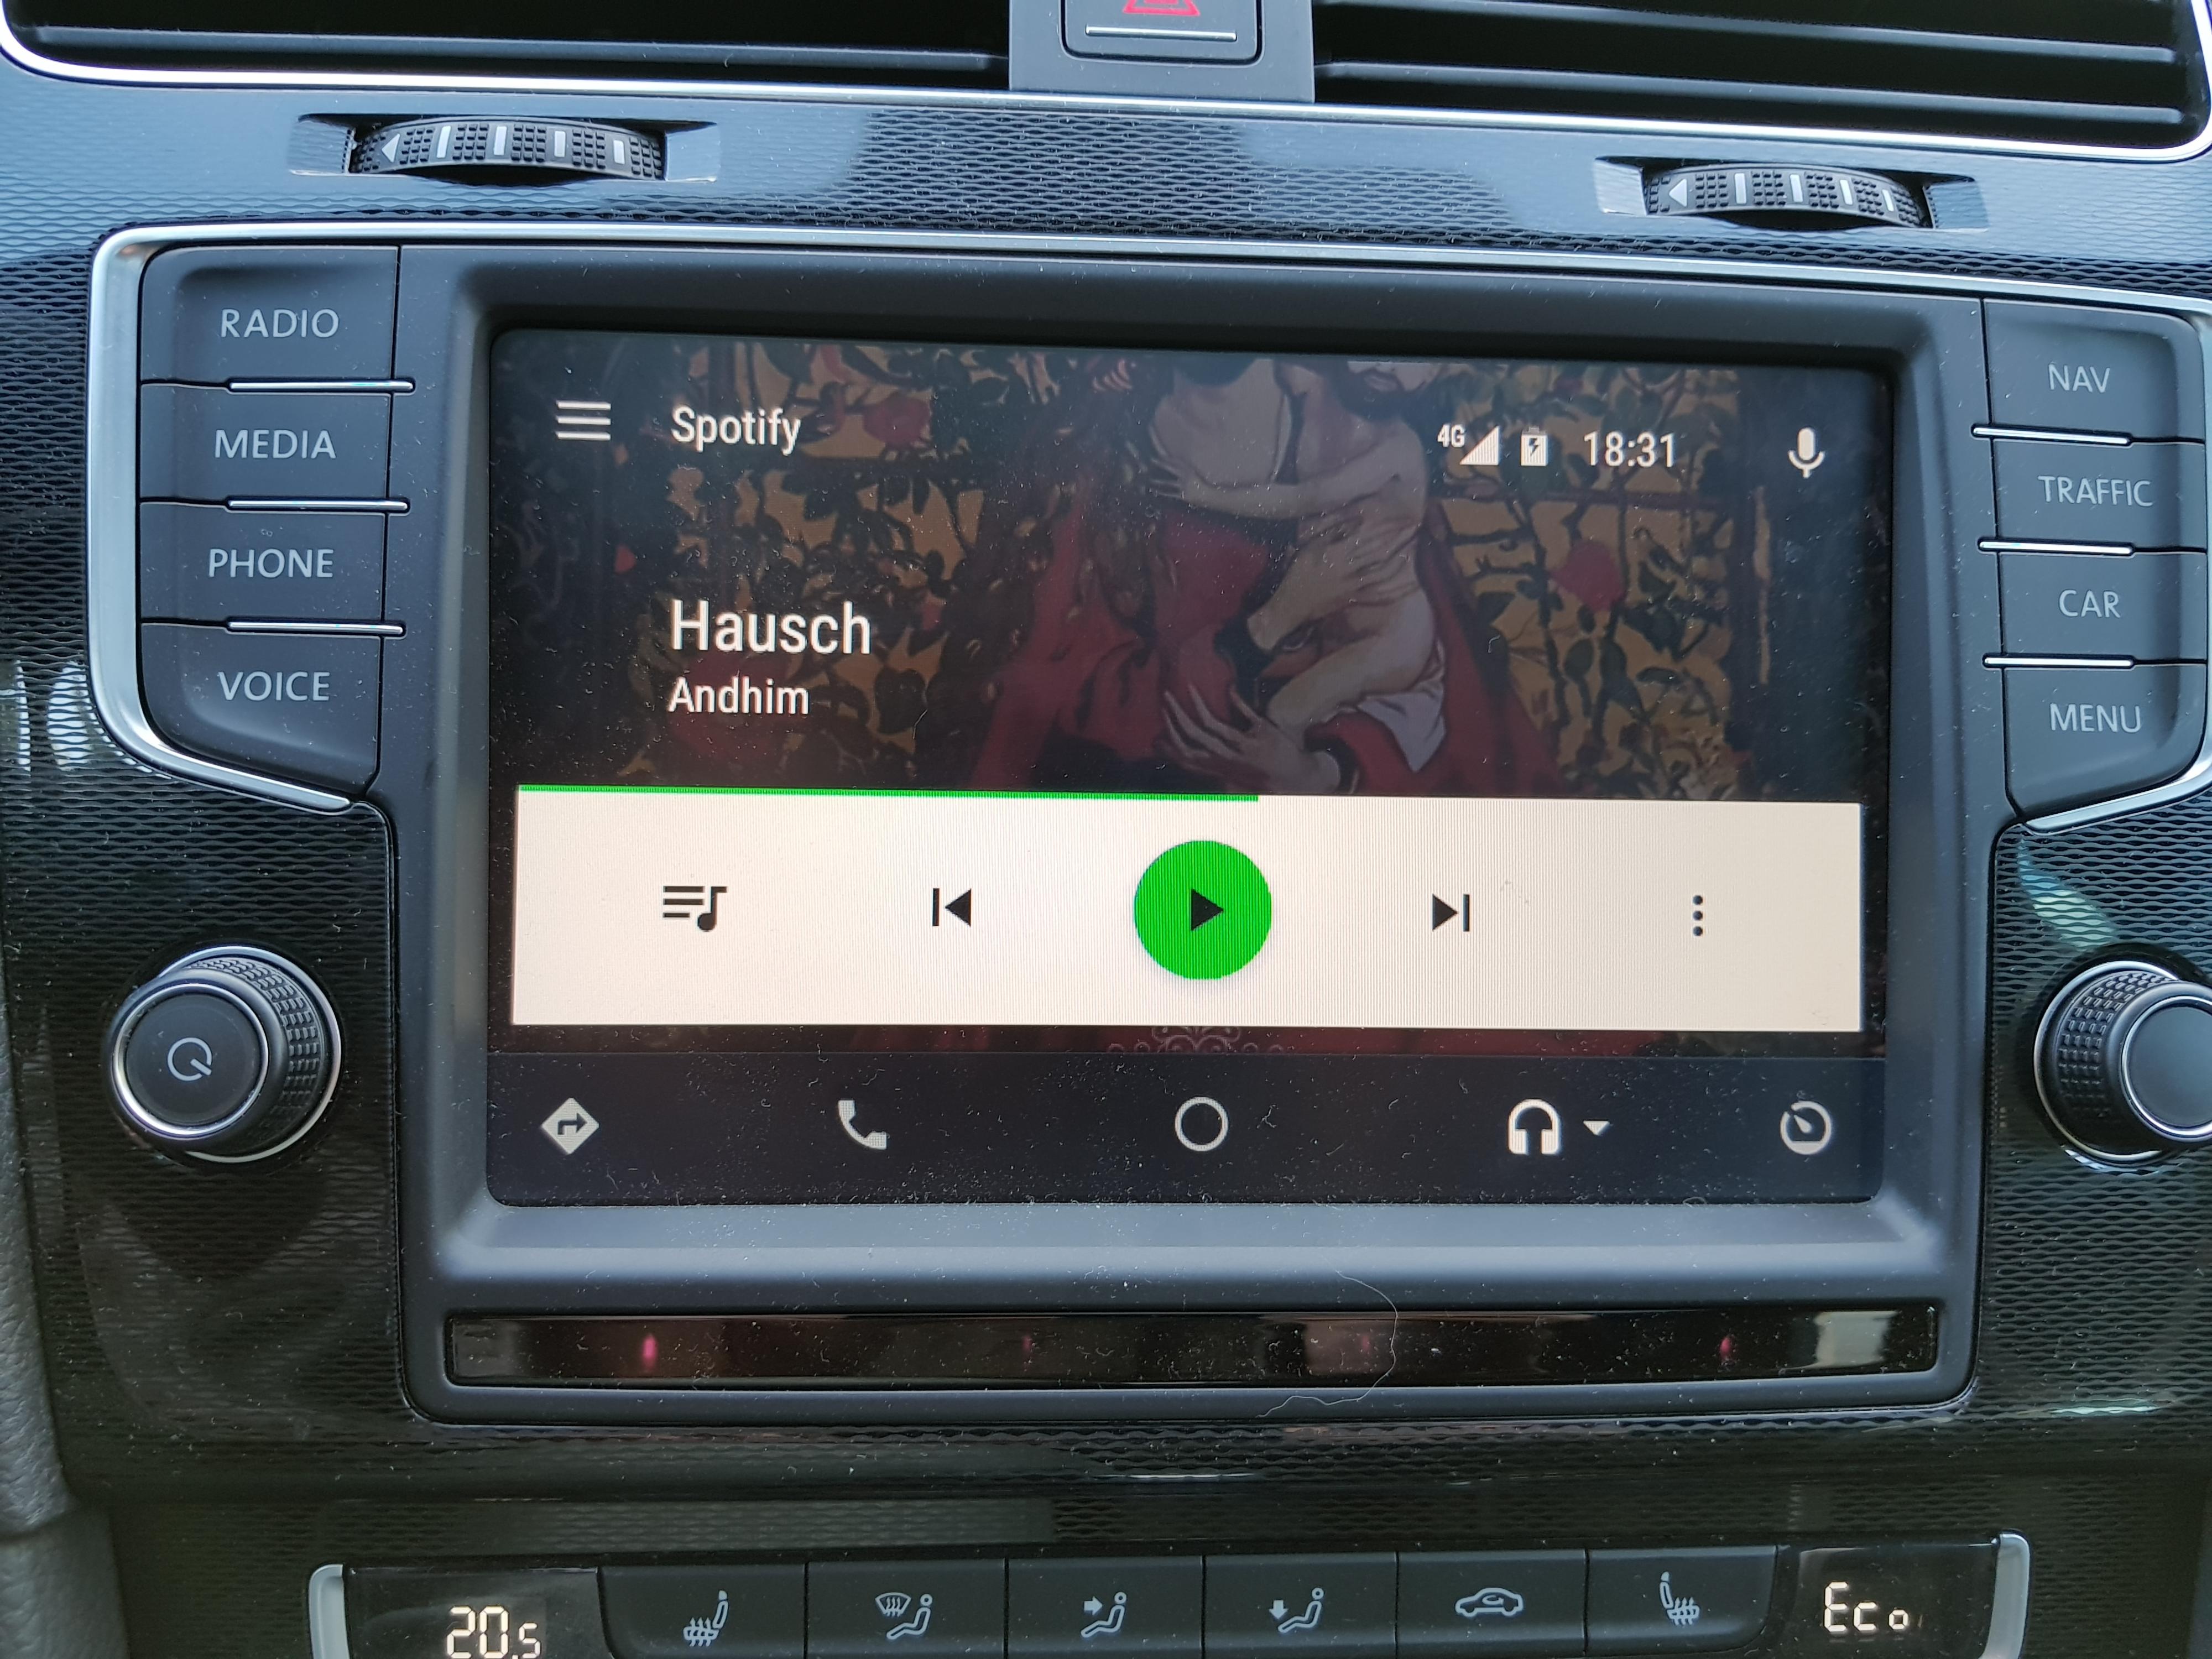 I Android Auto er det en rekke funksjoner som nekter å være fullt og helt tilgjengelige dersom bilen er i bevegelse. Men var ikke hele poenget å gjøre mobilen noenlunde trygg å bruke også i slike situasjoner, slik at man slipper å stoppe for å betjene den? Bilde: Finn Jarle Kvalheim, Tek.no